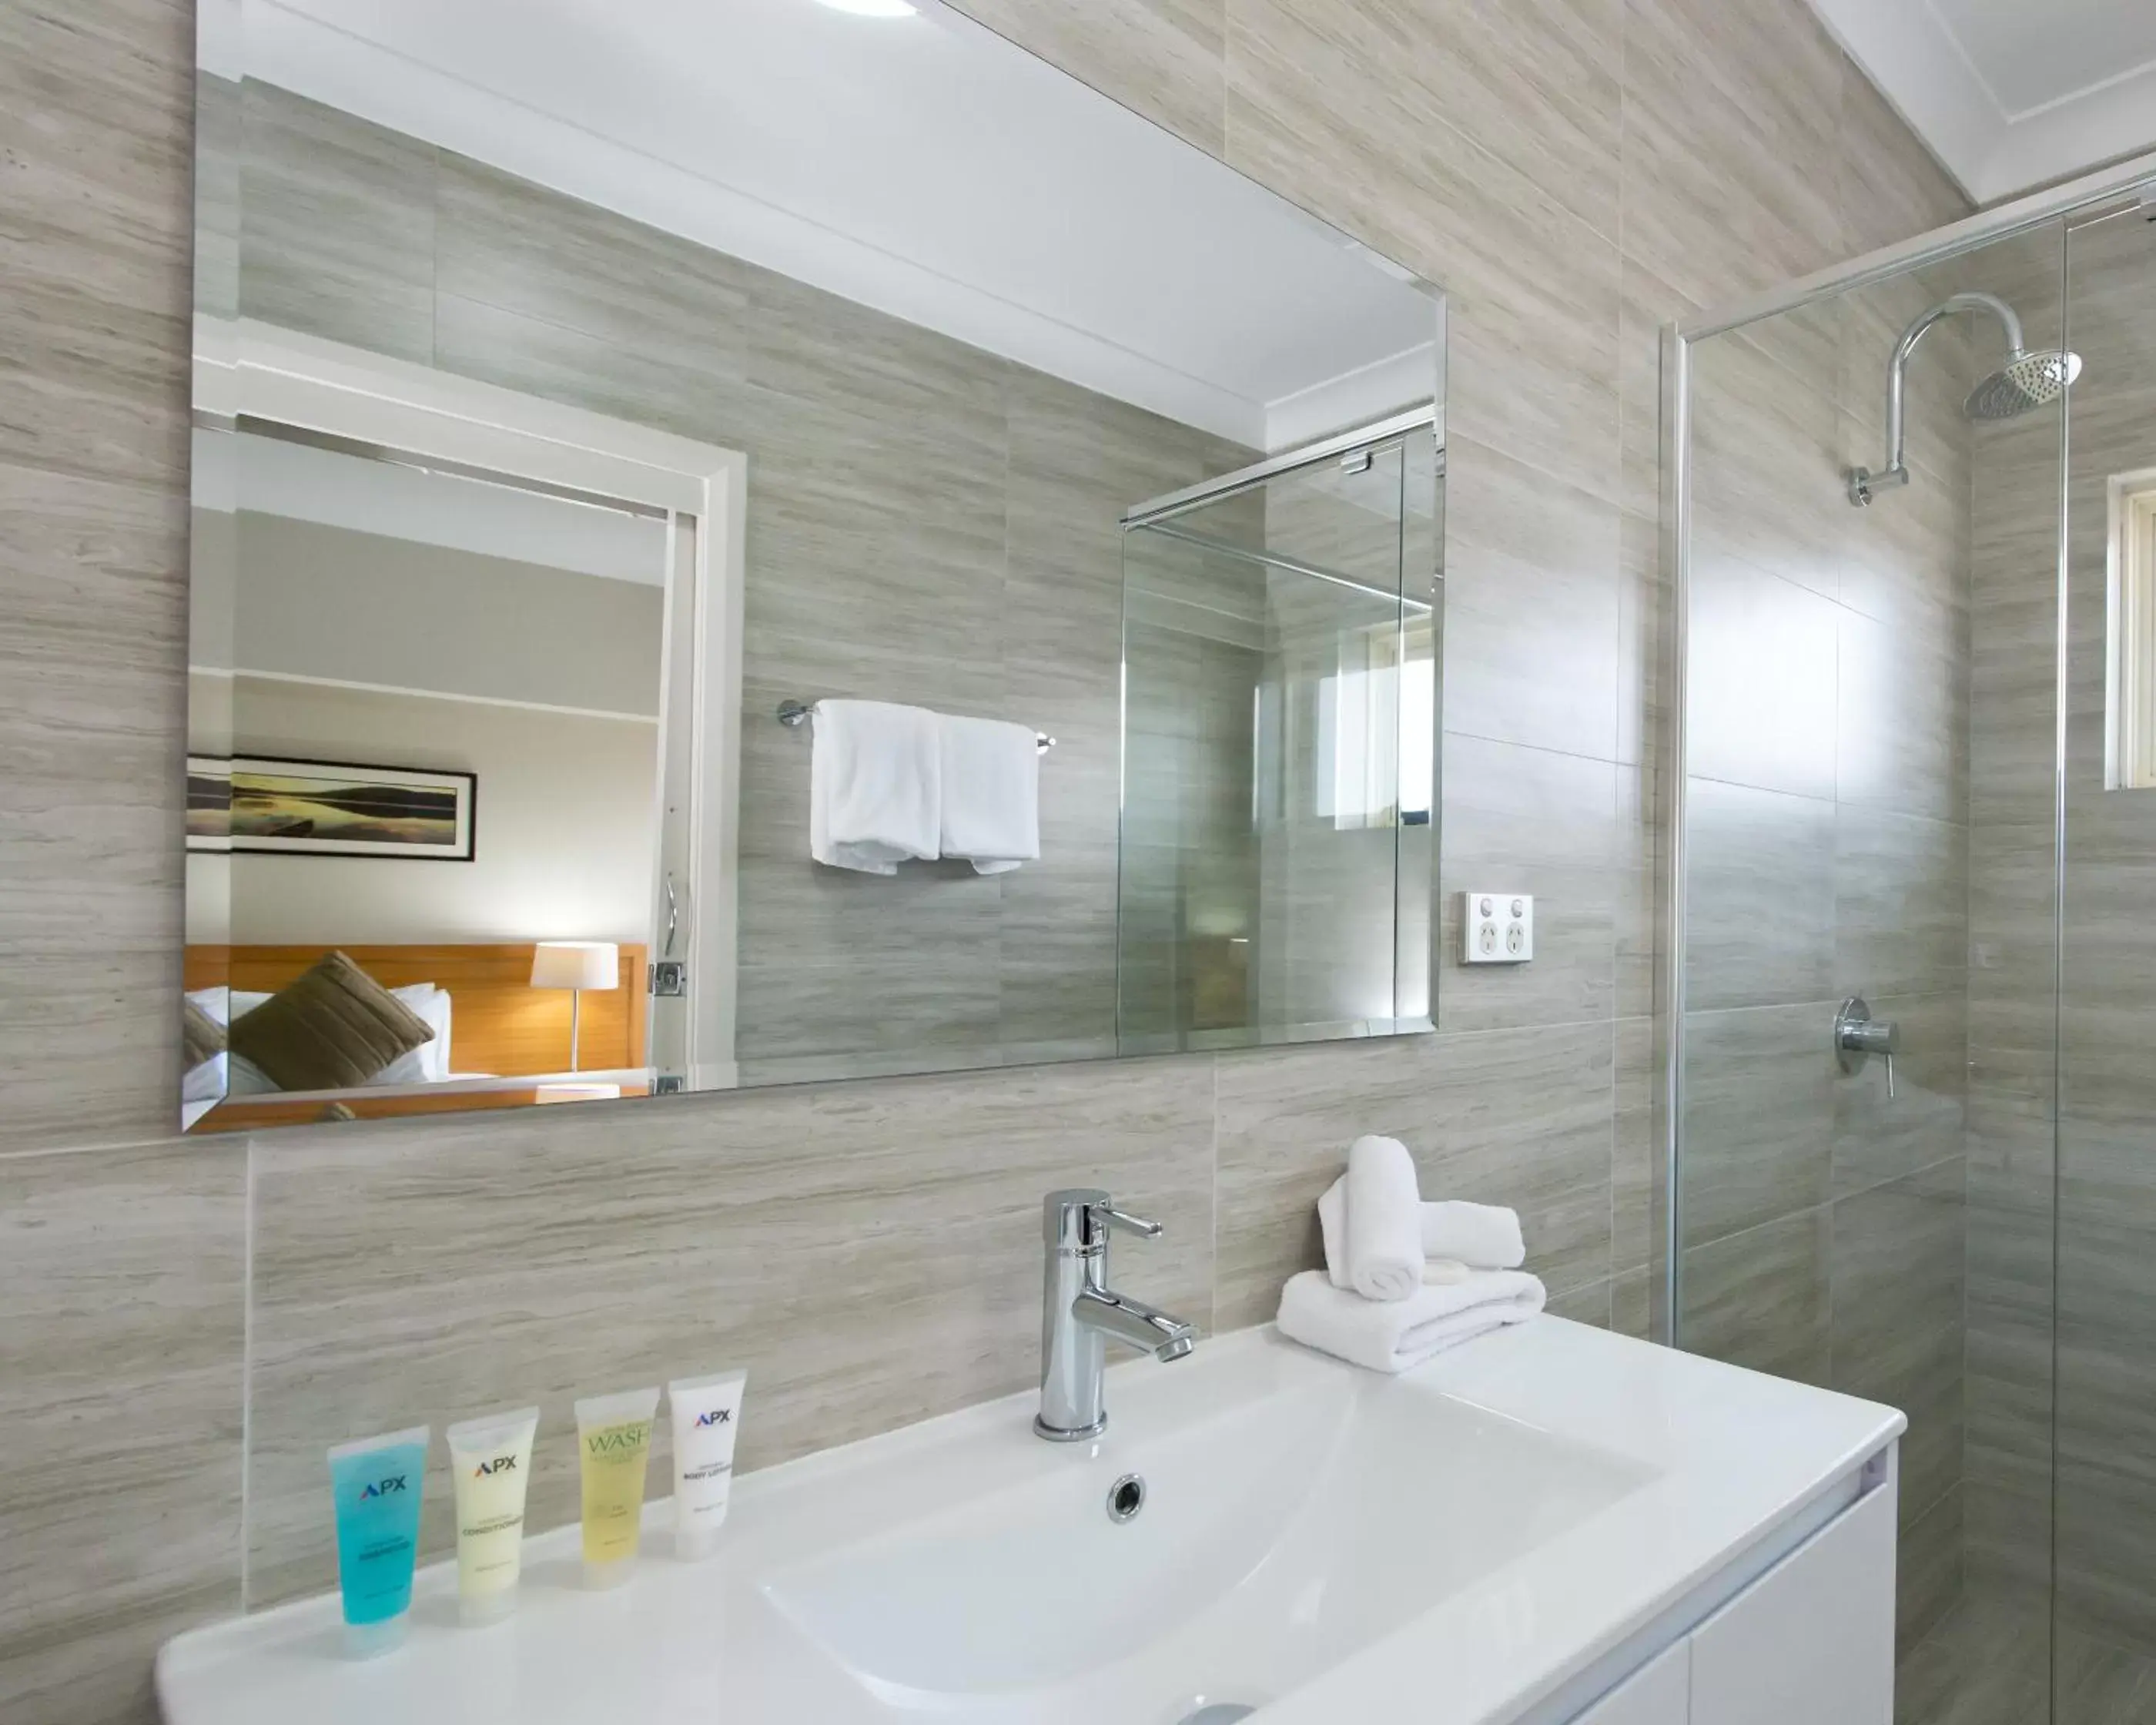 Shower, Bathroom in APX Parramatta